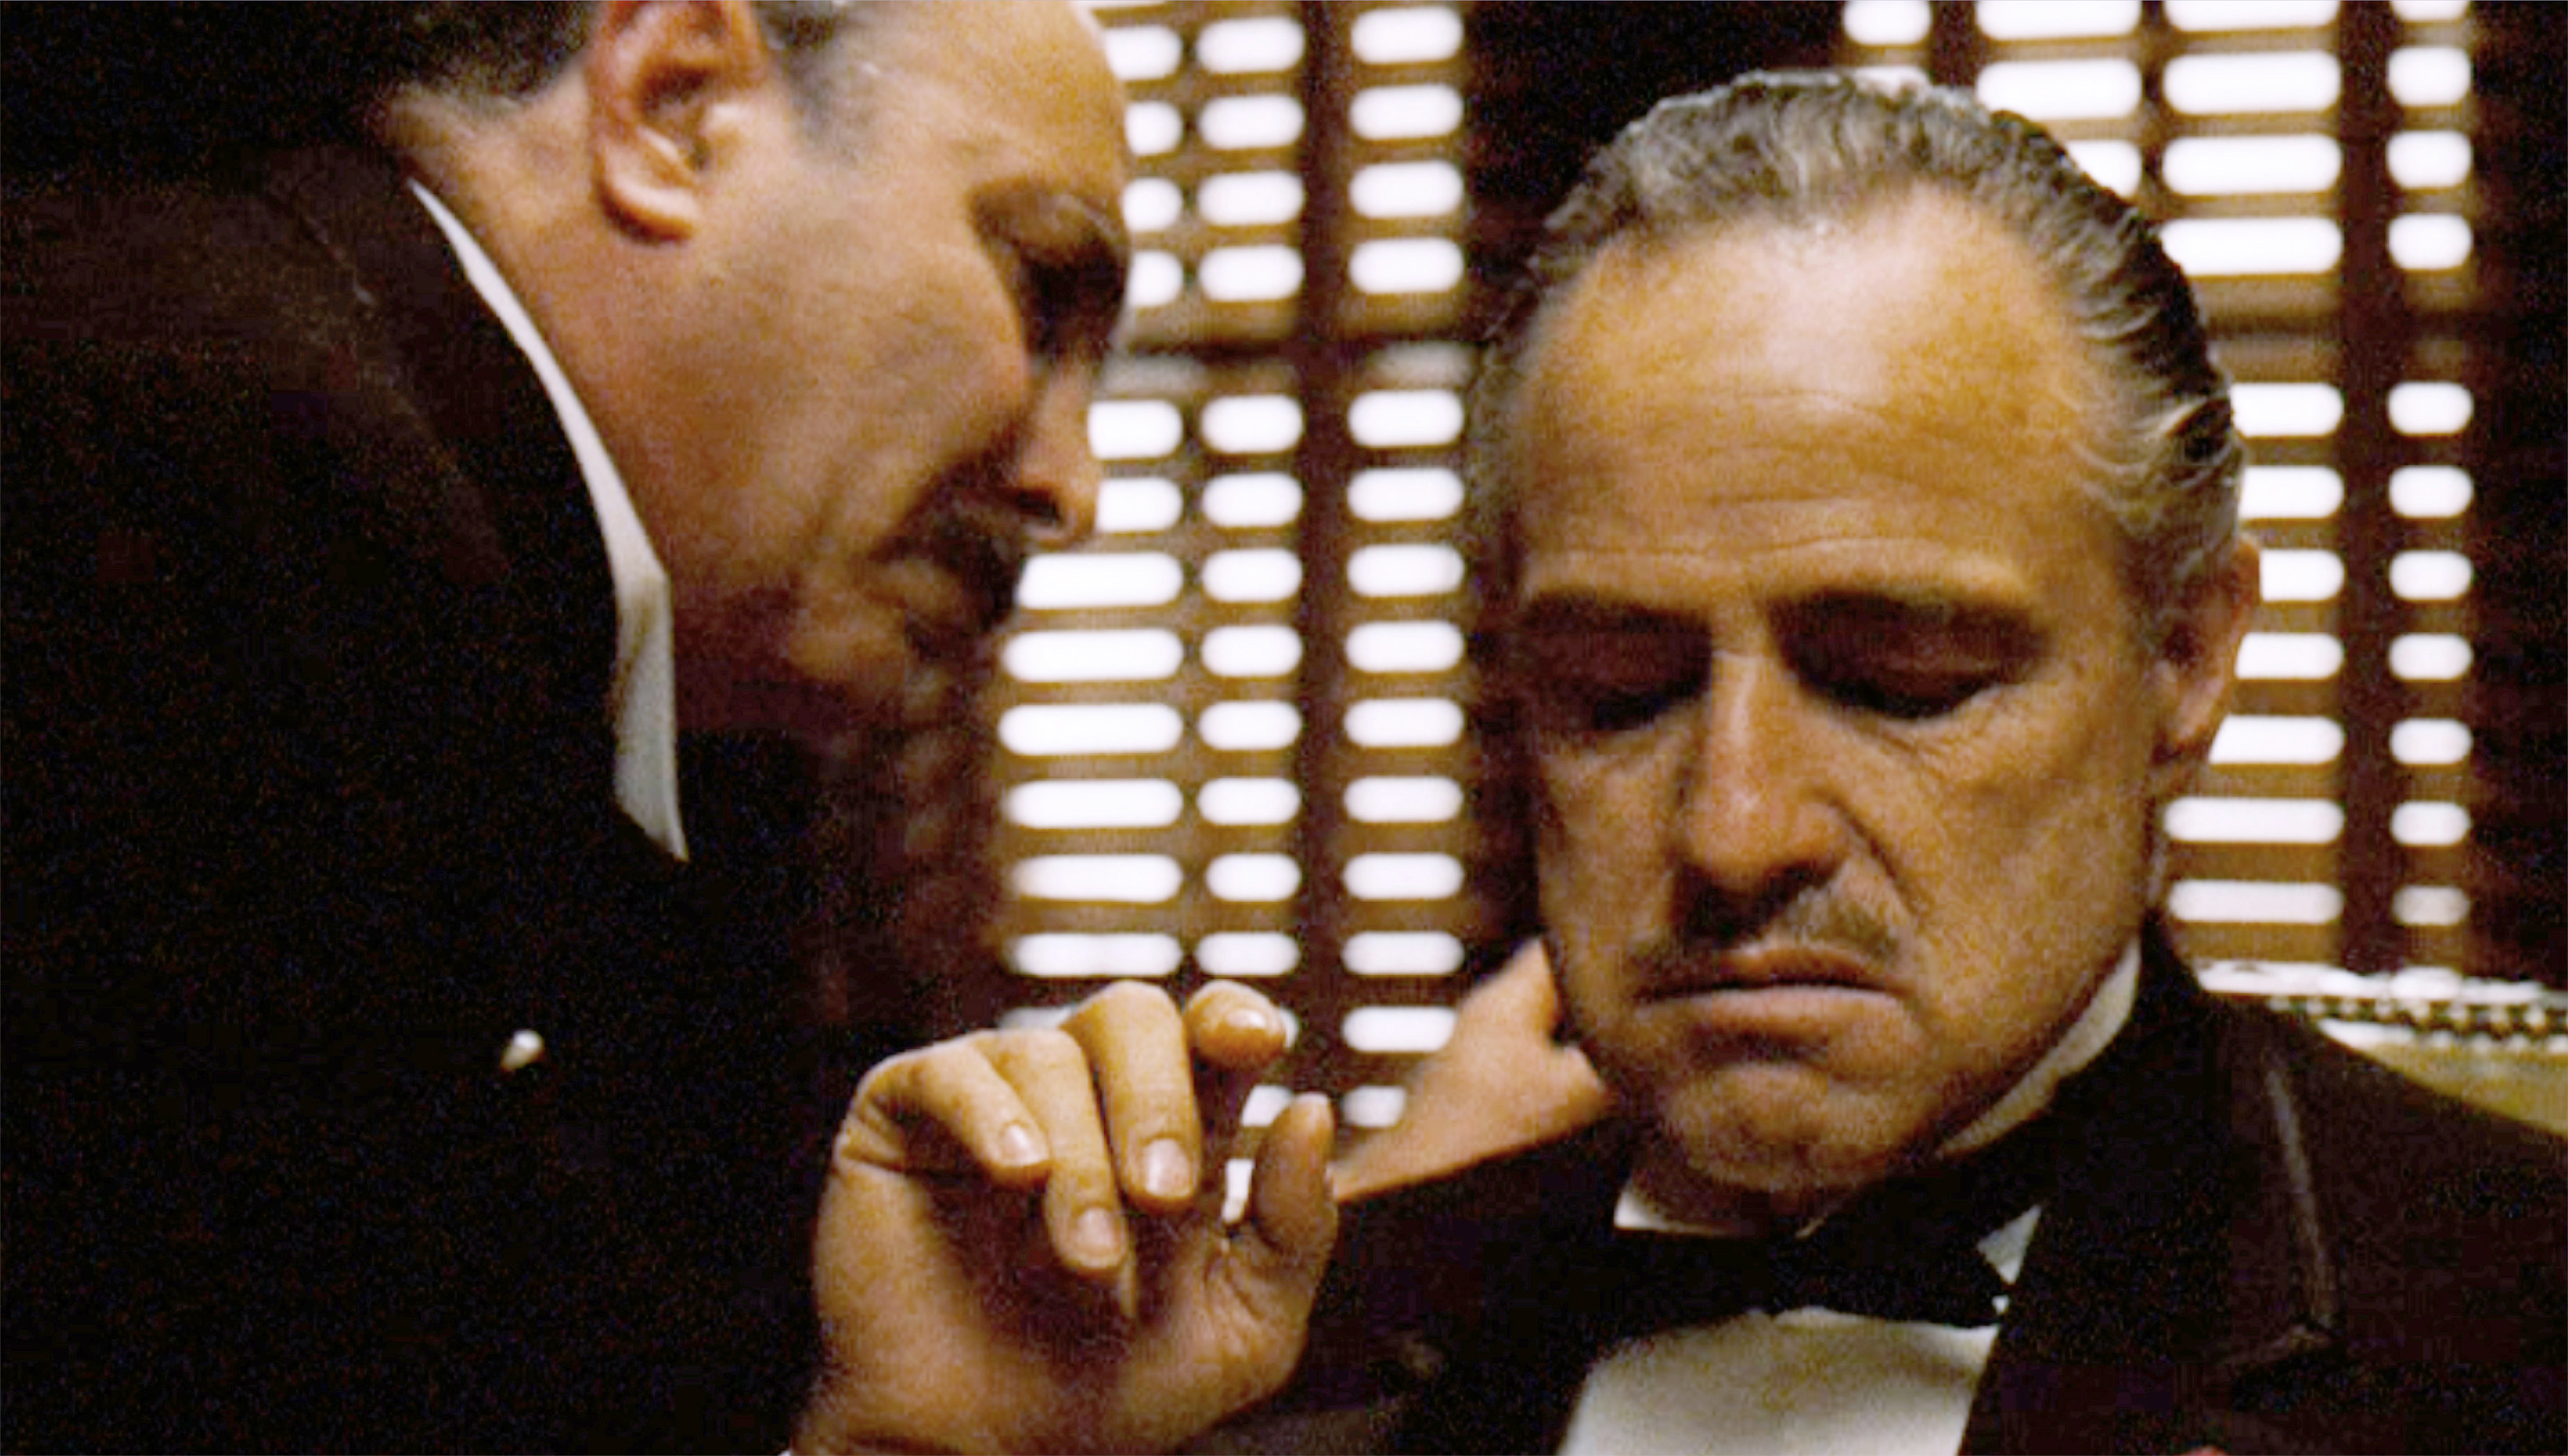 Marlon Brando stars as Don Corleone in The Godfather